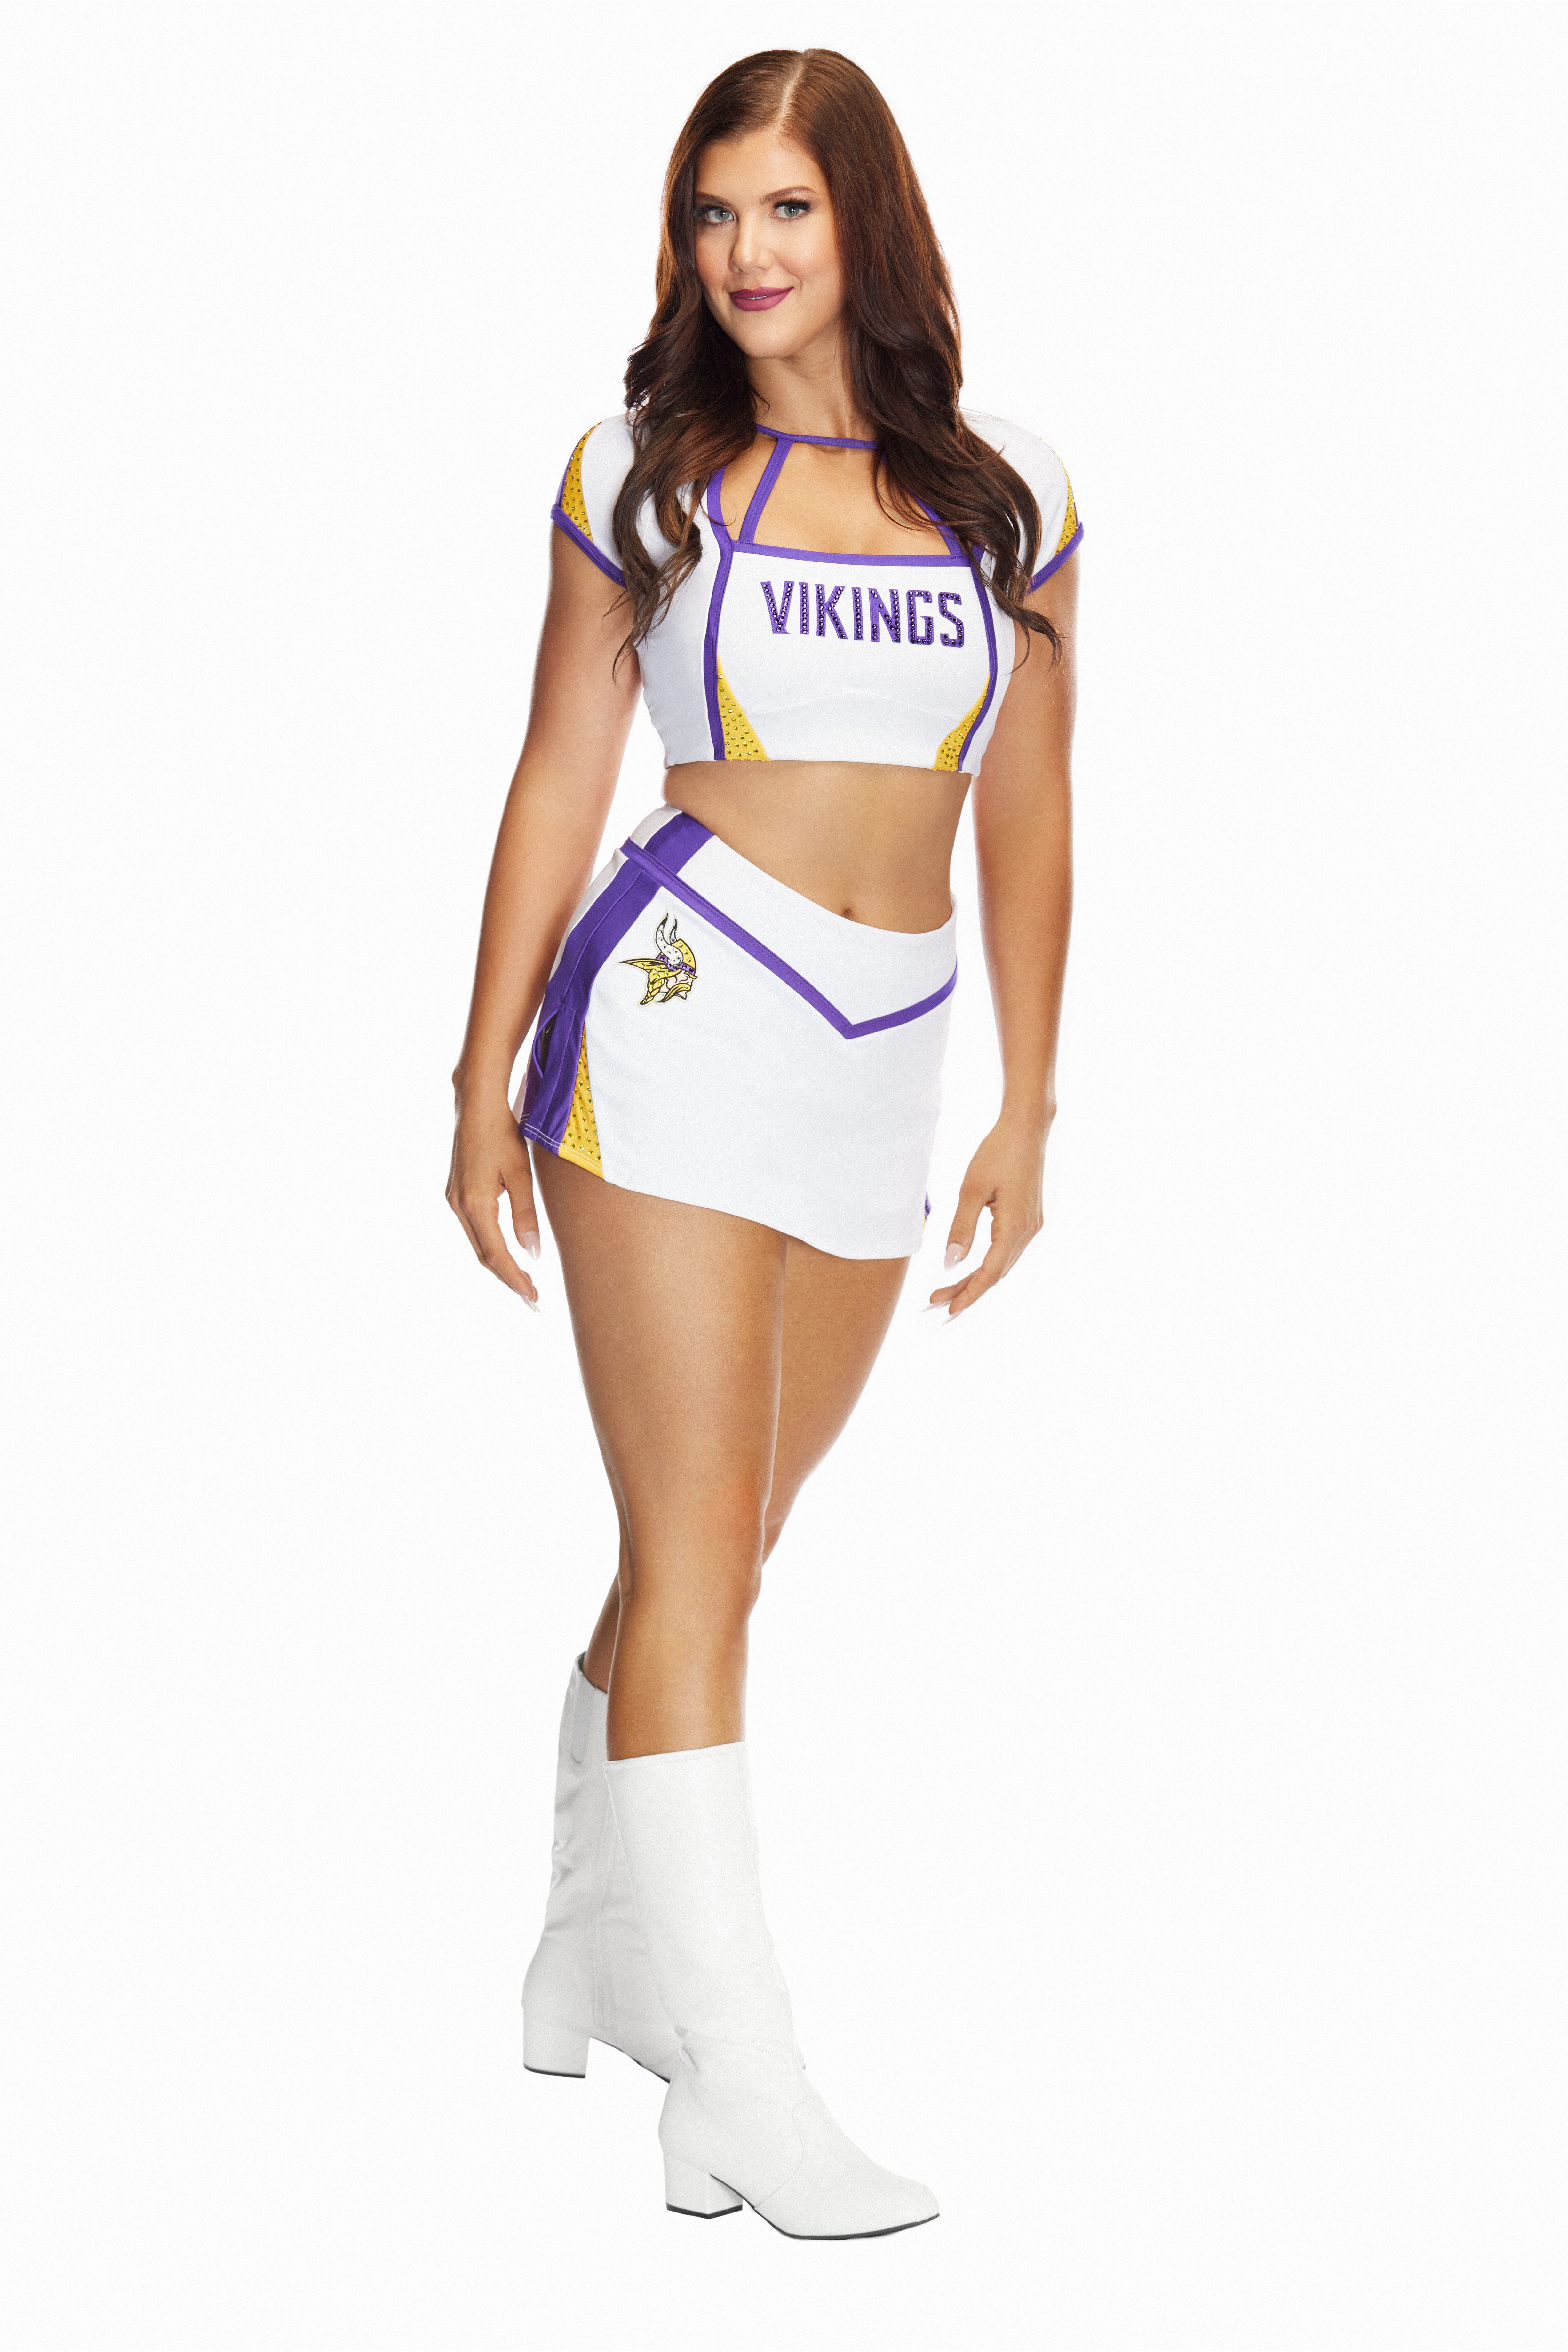 Cheerleader of the Week: Kaylee  Nylon leggings, Vikings cheerleaders, Fit  women